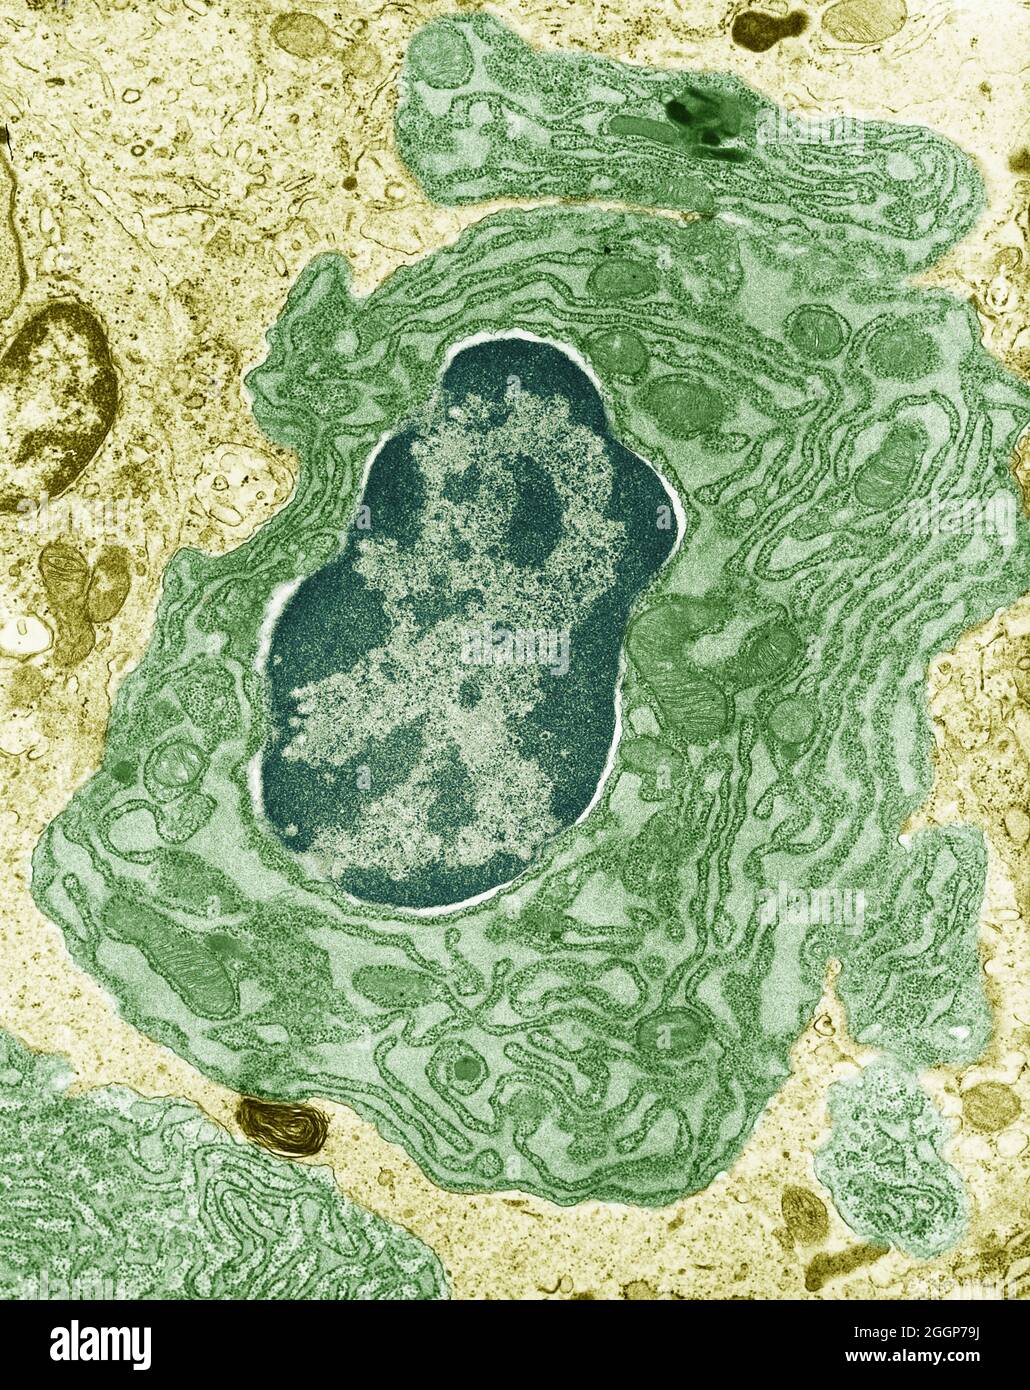 Micrografia elettronica a trasmissione colorata (TEM) della cellula intestinale, che mostra il nucleo e il reticolo endoplasmatico circostante e i mitocondri. Foto Stock